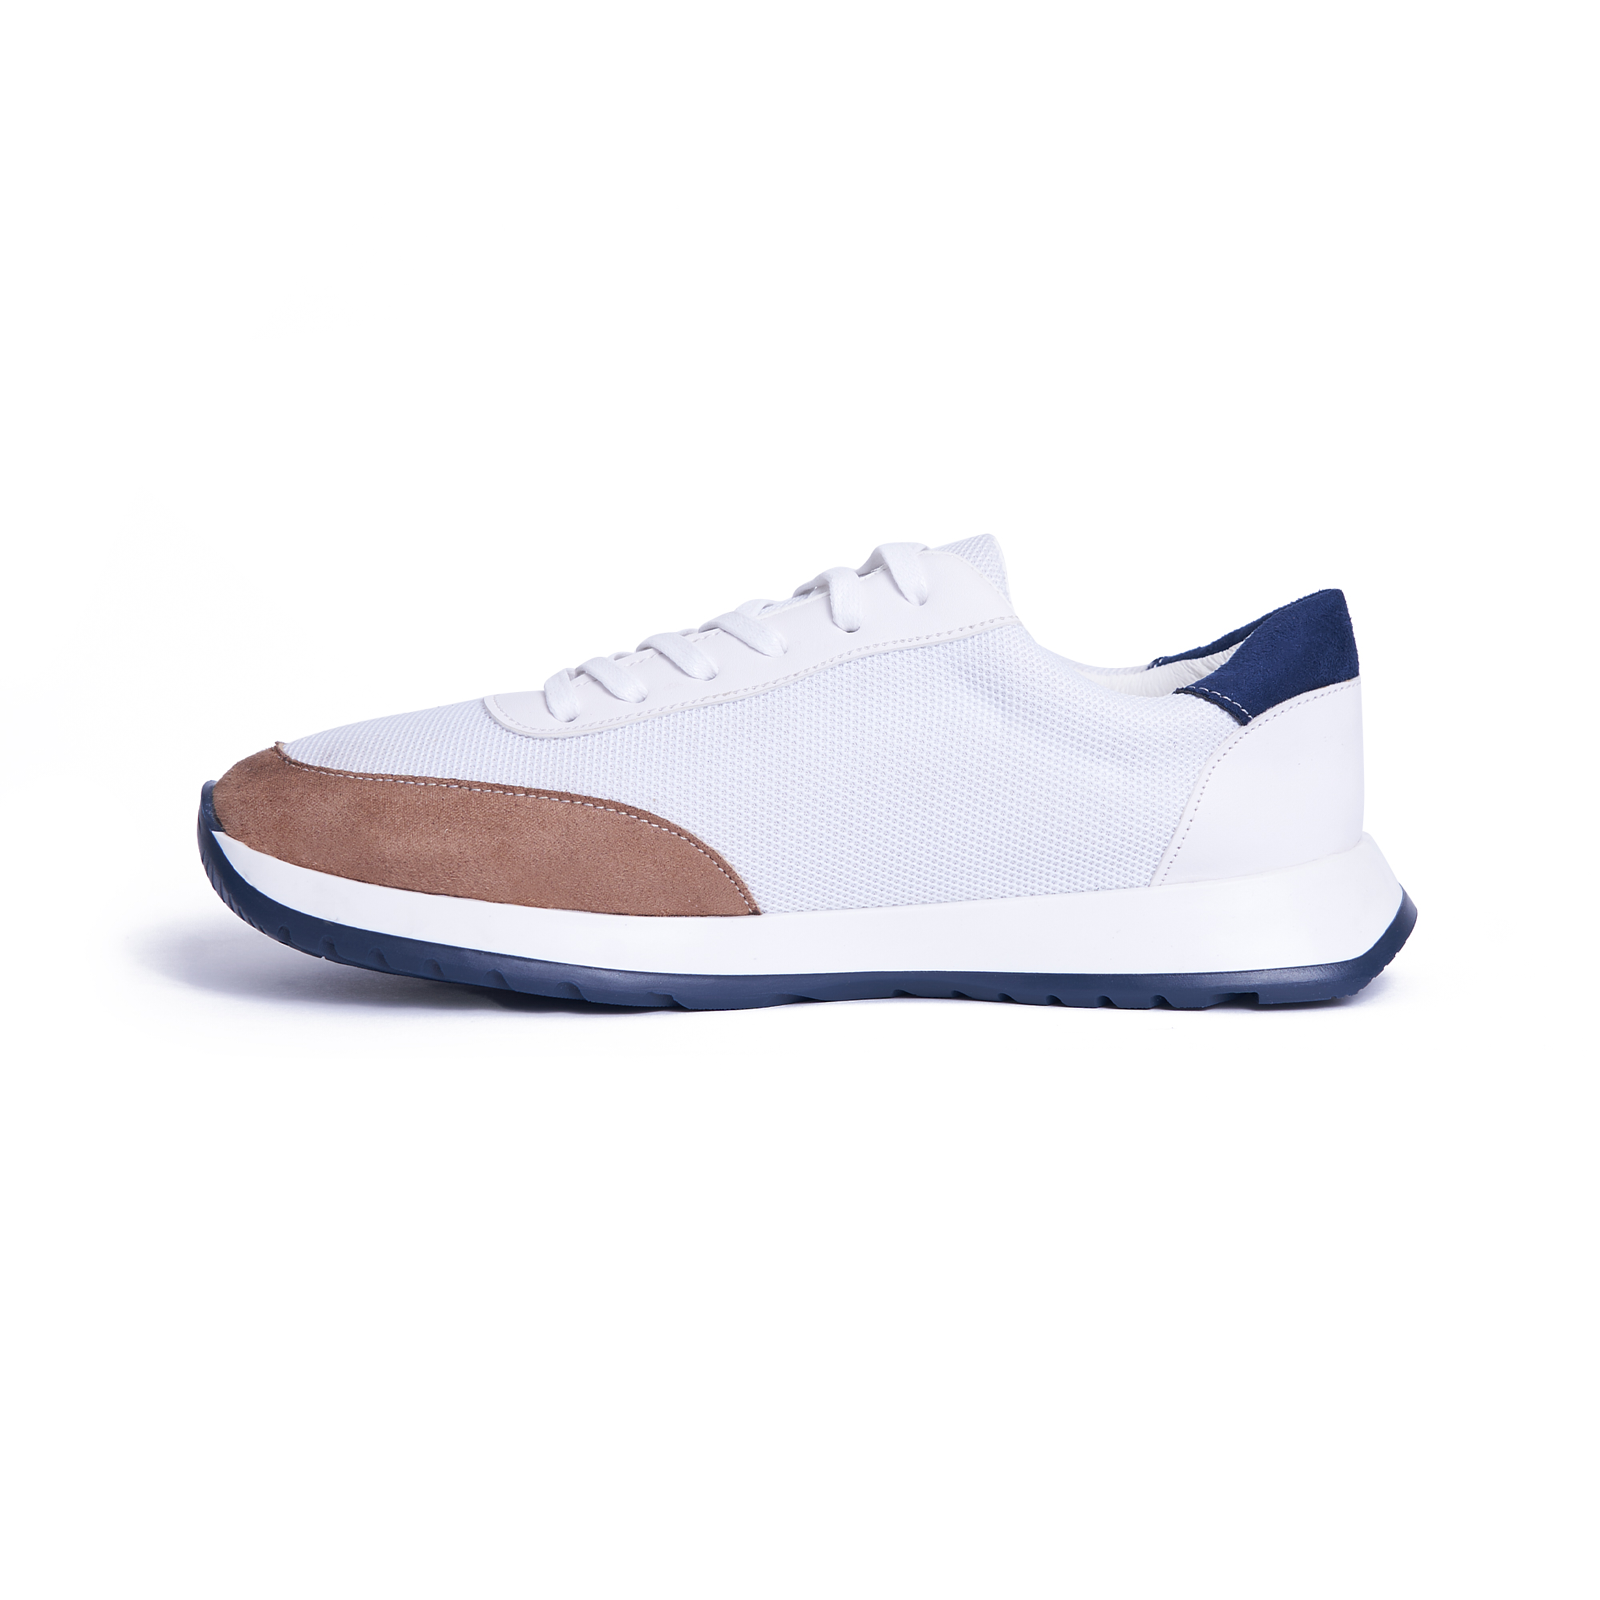 Men's Fashion Sneaker - White Color.